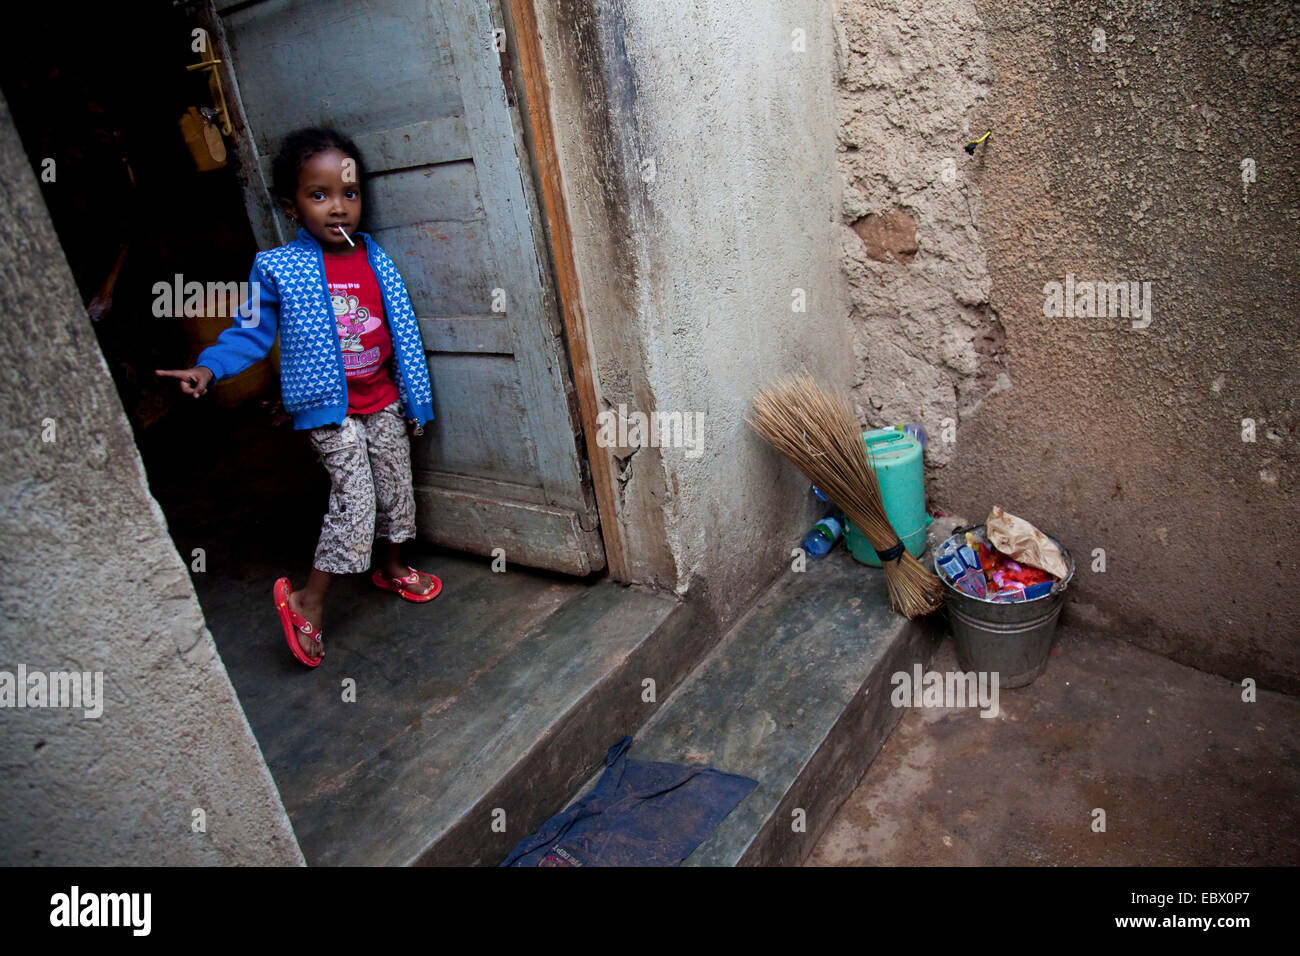 Petite fille dans un quartier pauvre de la capitale vagues dans la maison que vous approche, Rwanda, Kigali, Nyamirambo Banque D'Images